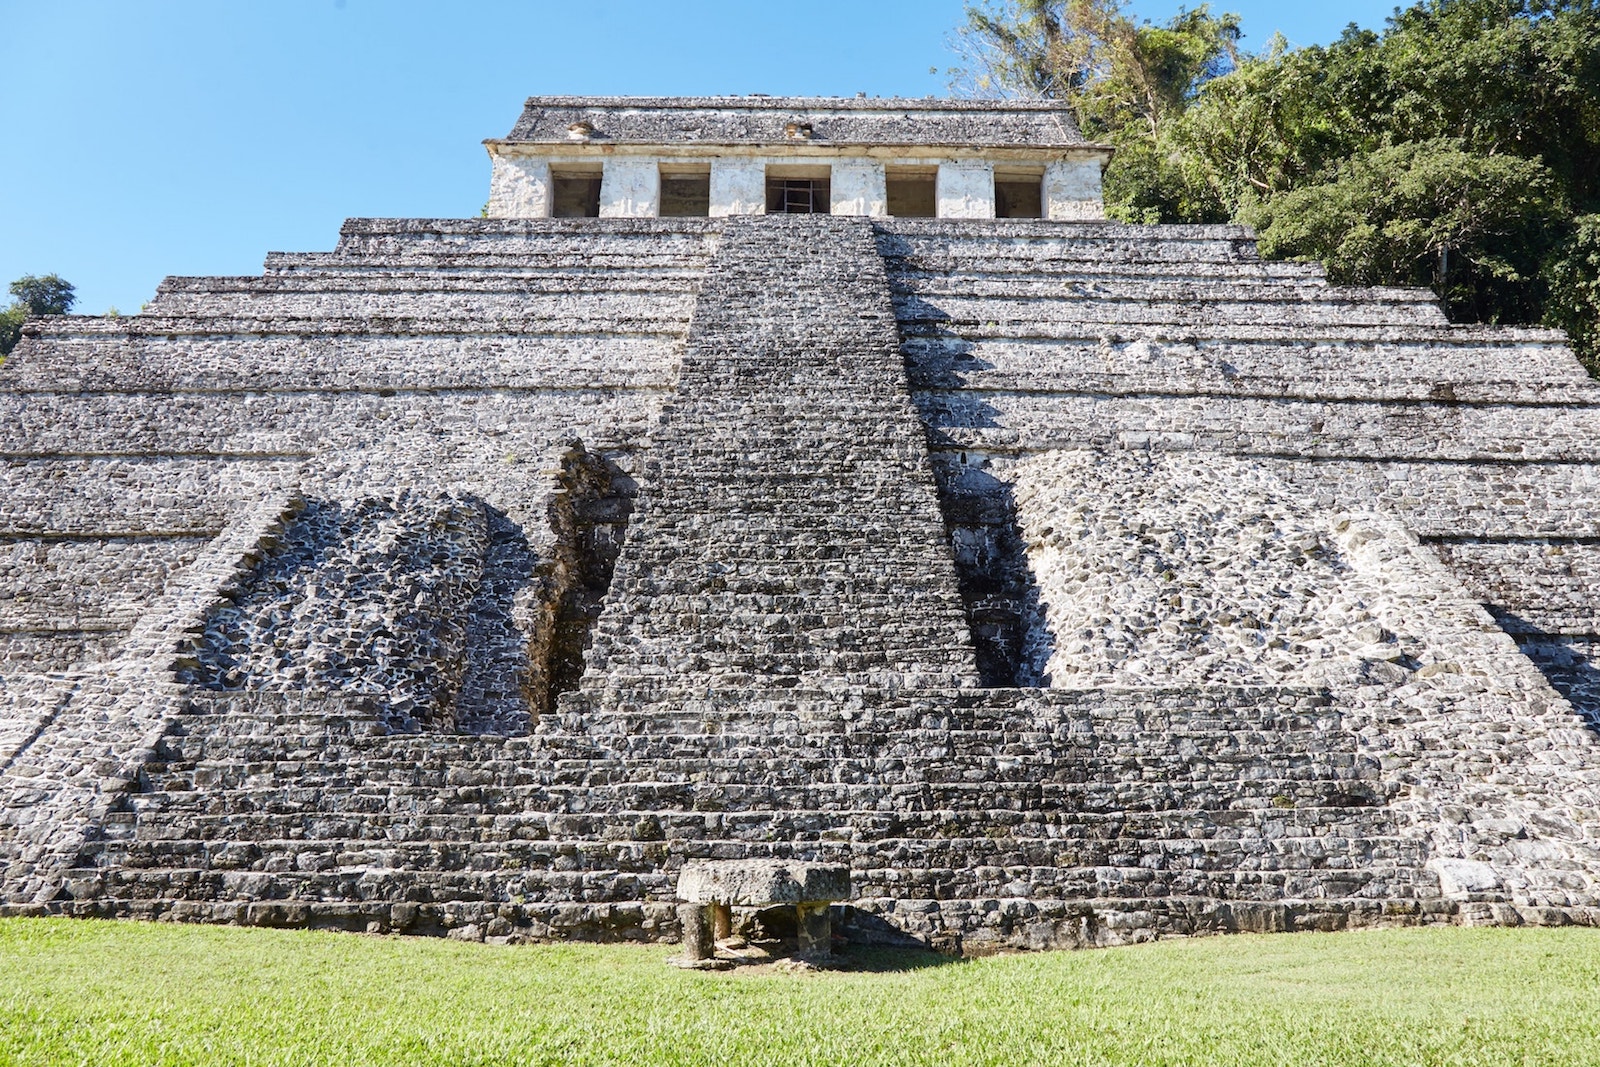 Visiting Palenque Ruins